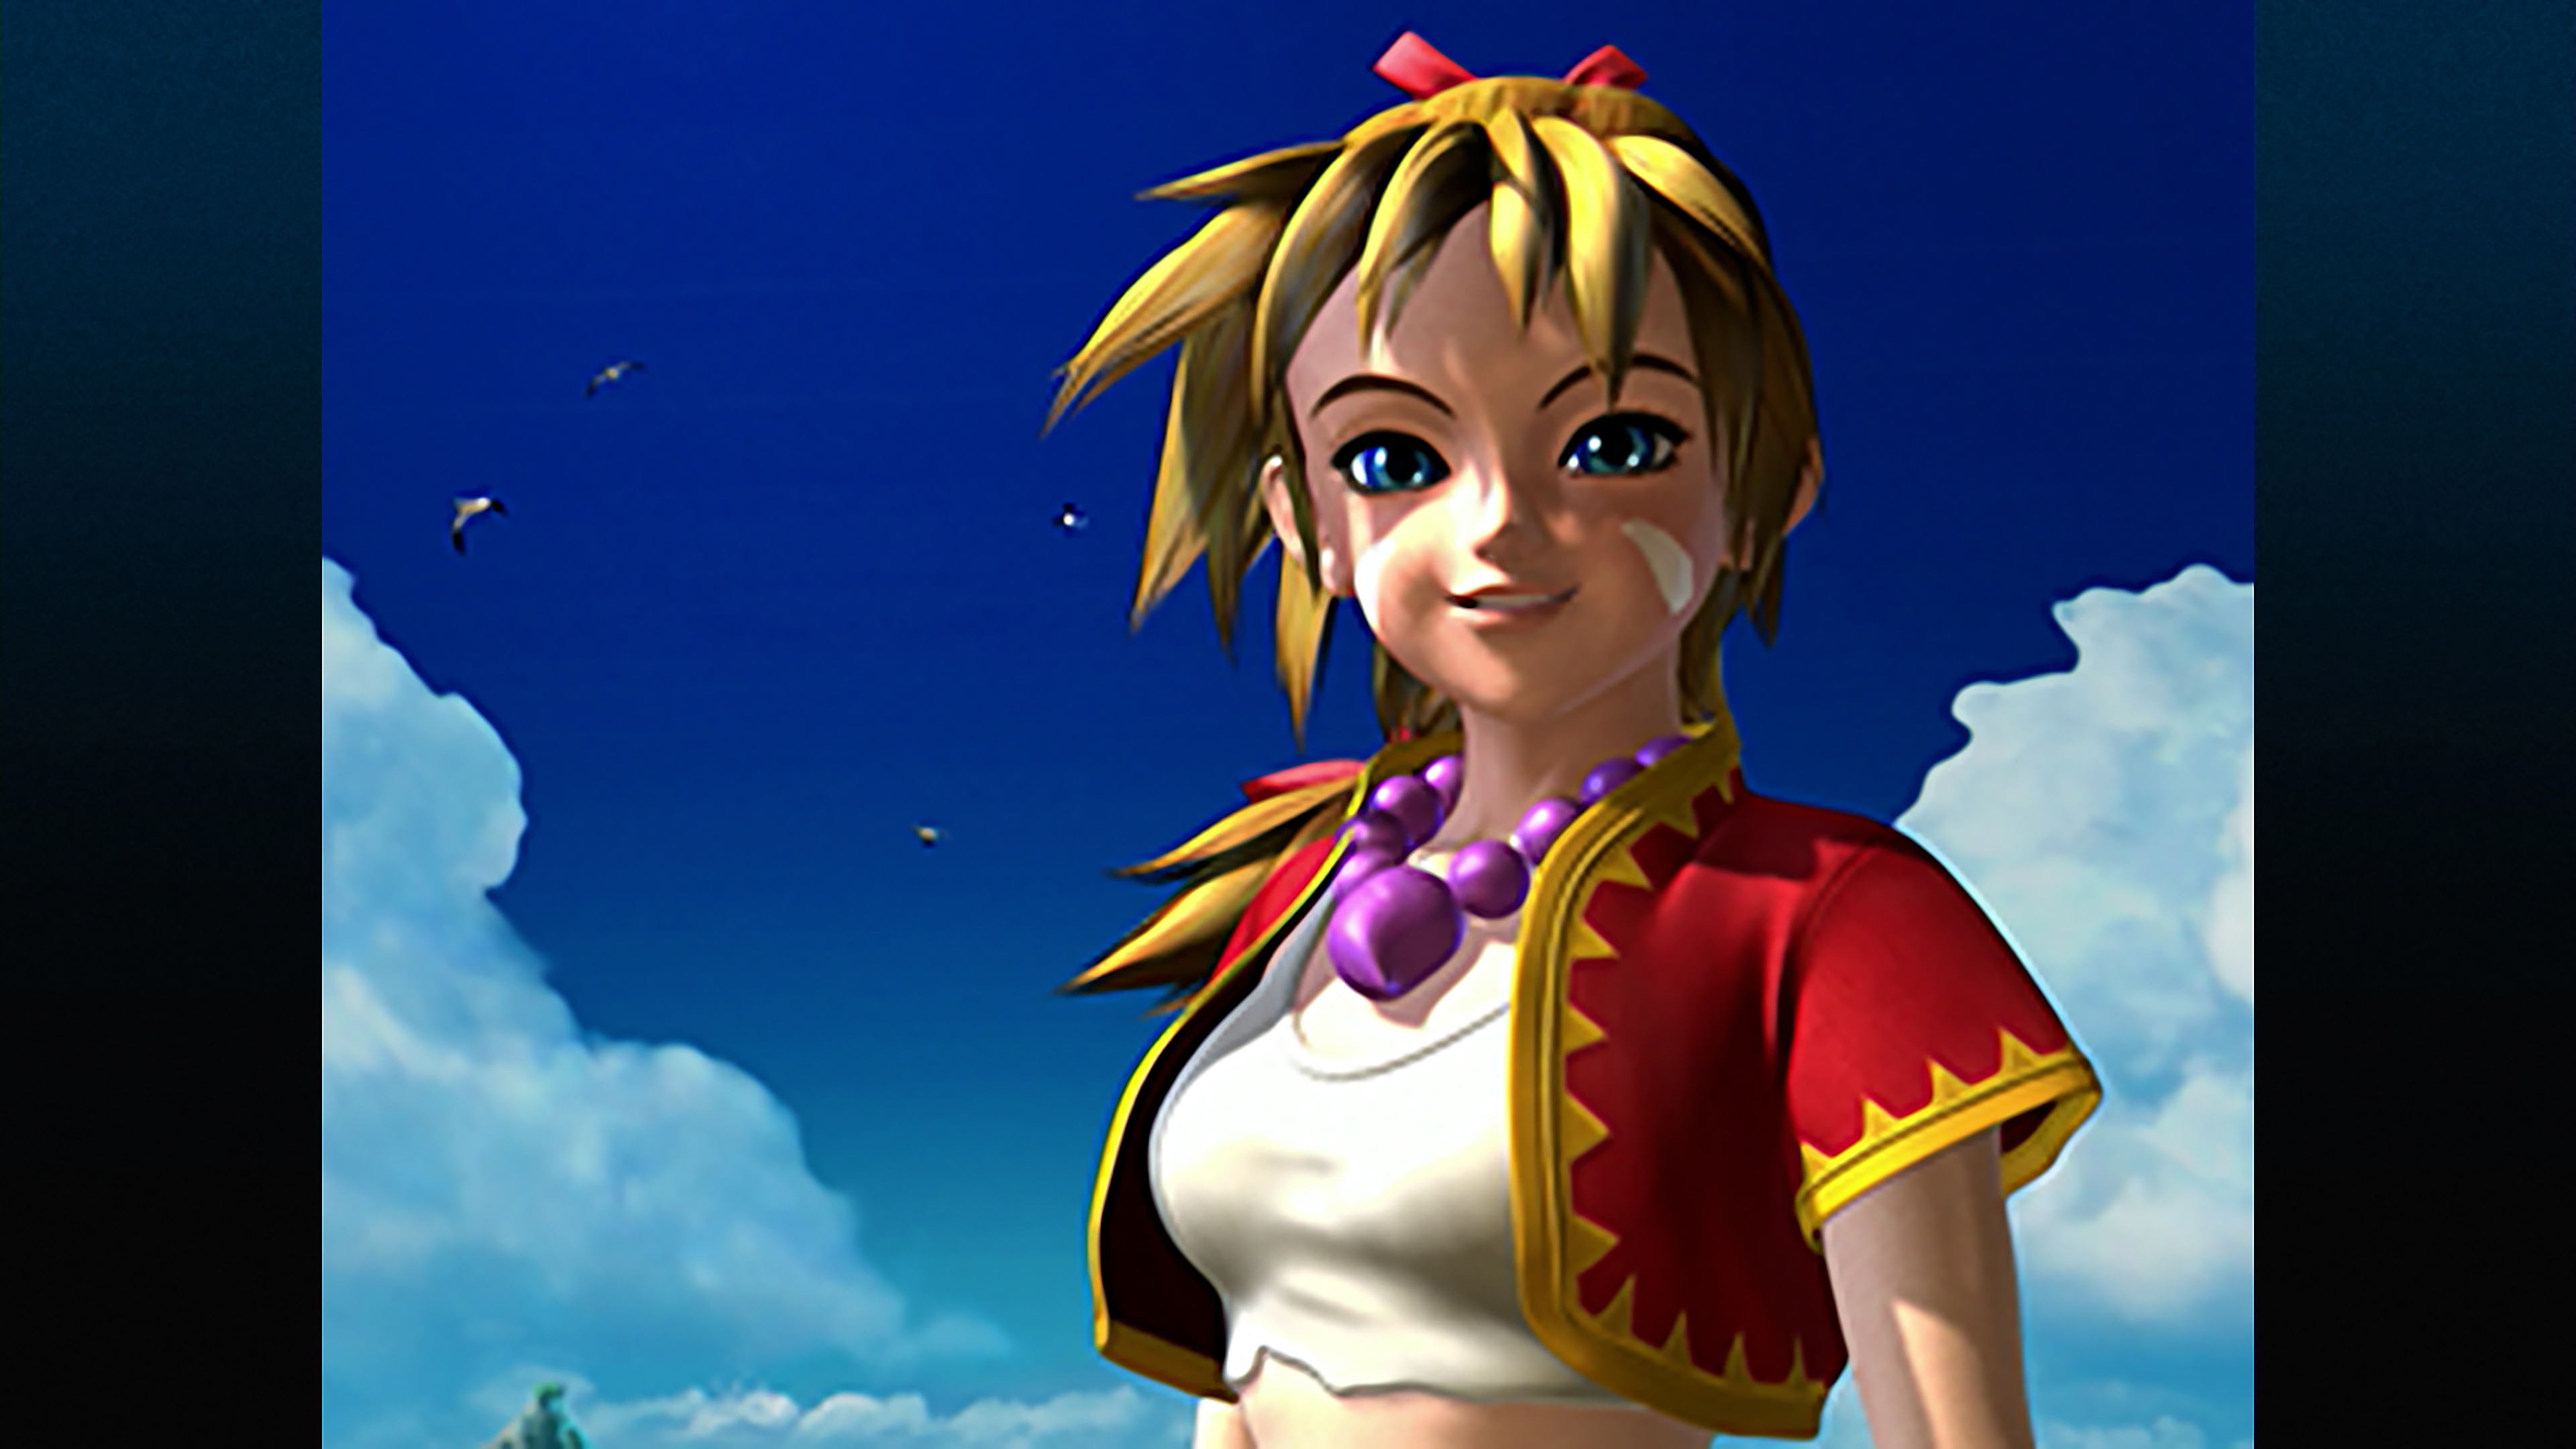 Chrono Cross: The Radical Dreamers Edition-screenshot van een personage met blond haar, in een rood-geel jasje